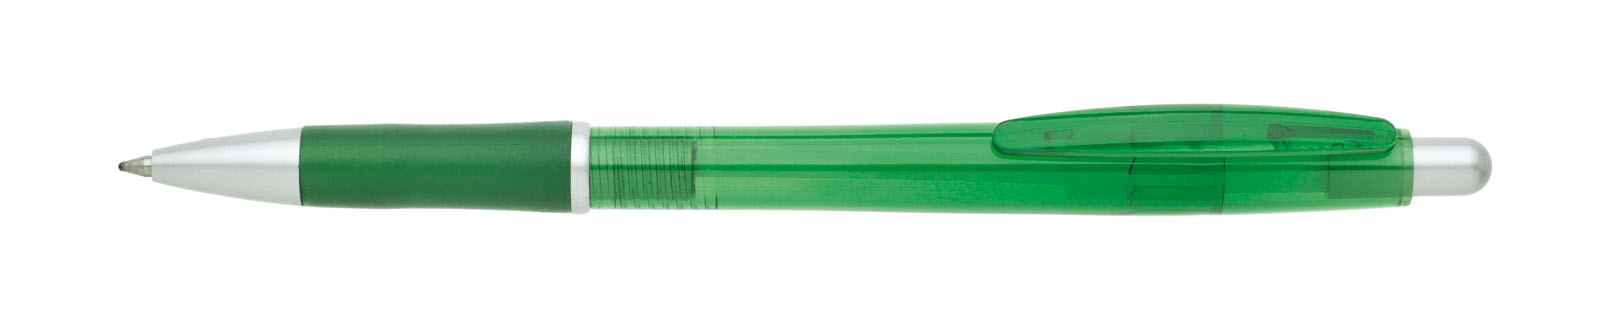 Propiska plast SUTRI, zelená